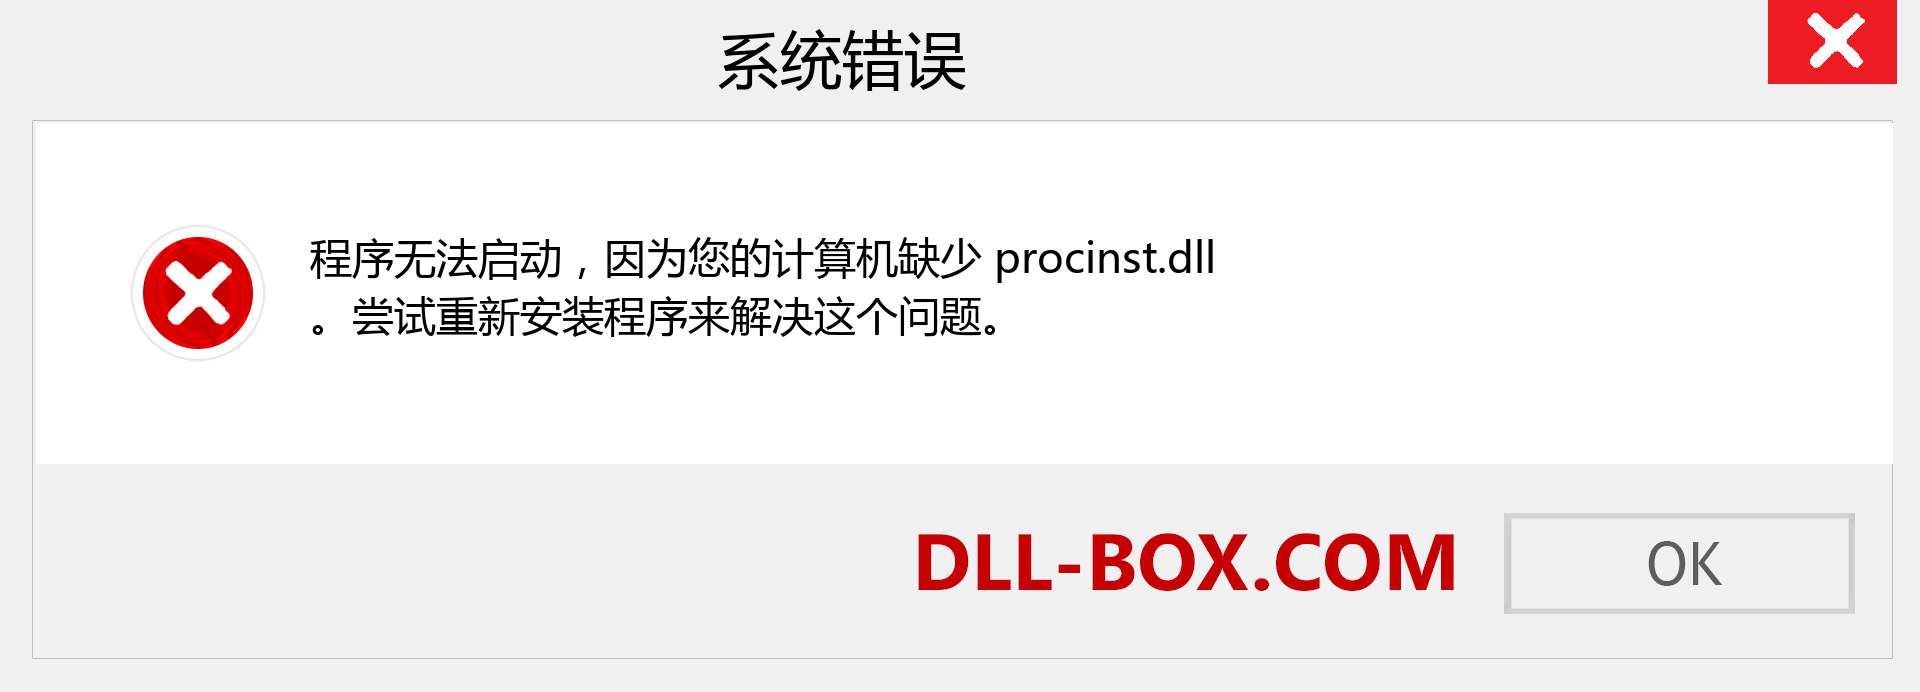 procinst.dll 文件丢失？。 适用于 Windows 7、8、10 的下载 - 修复 Windows、照片、图像上的 procinst dll 丢失错误